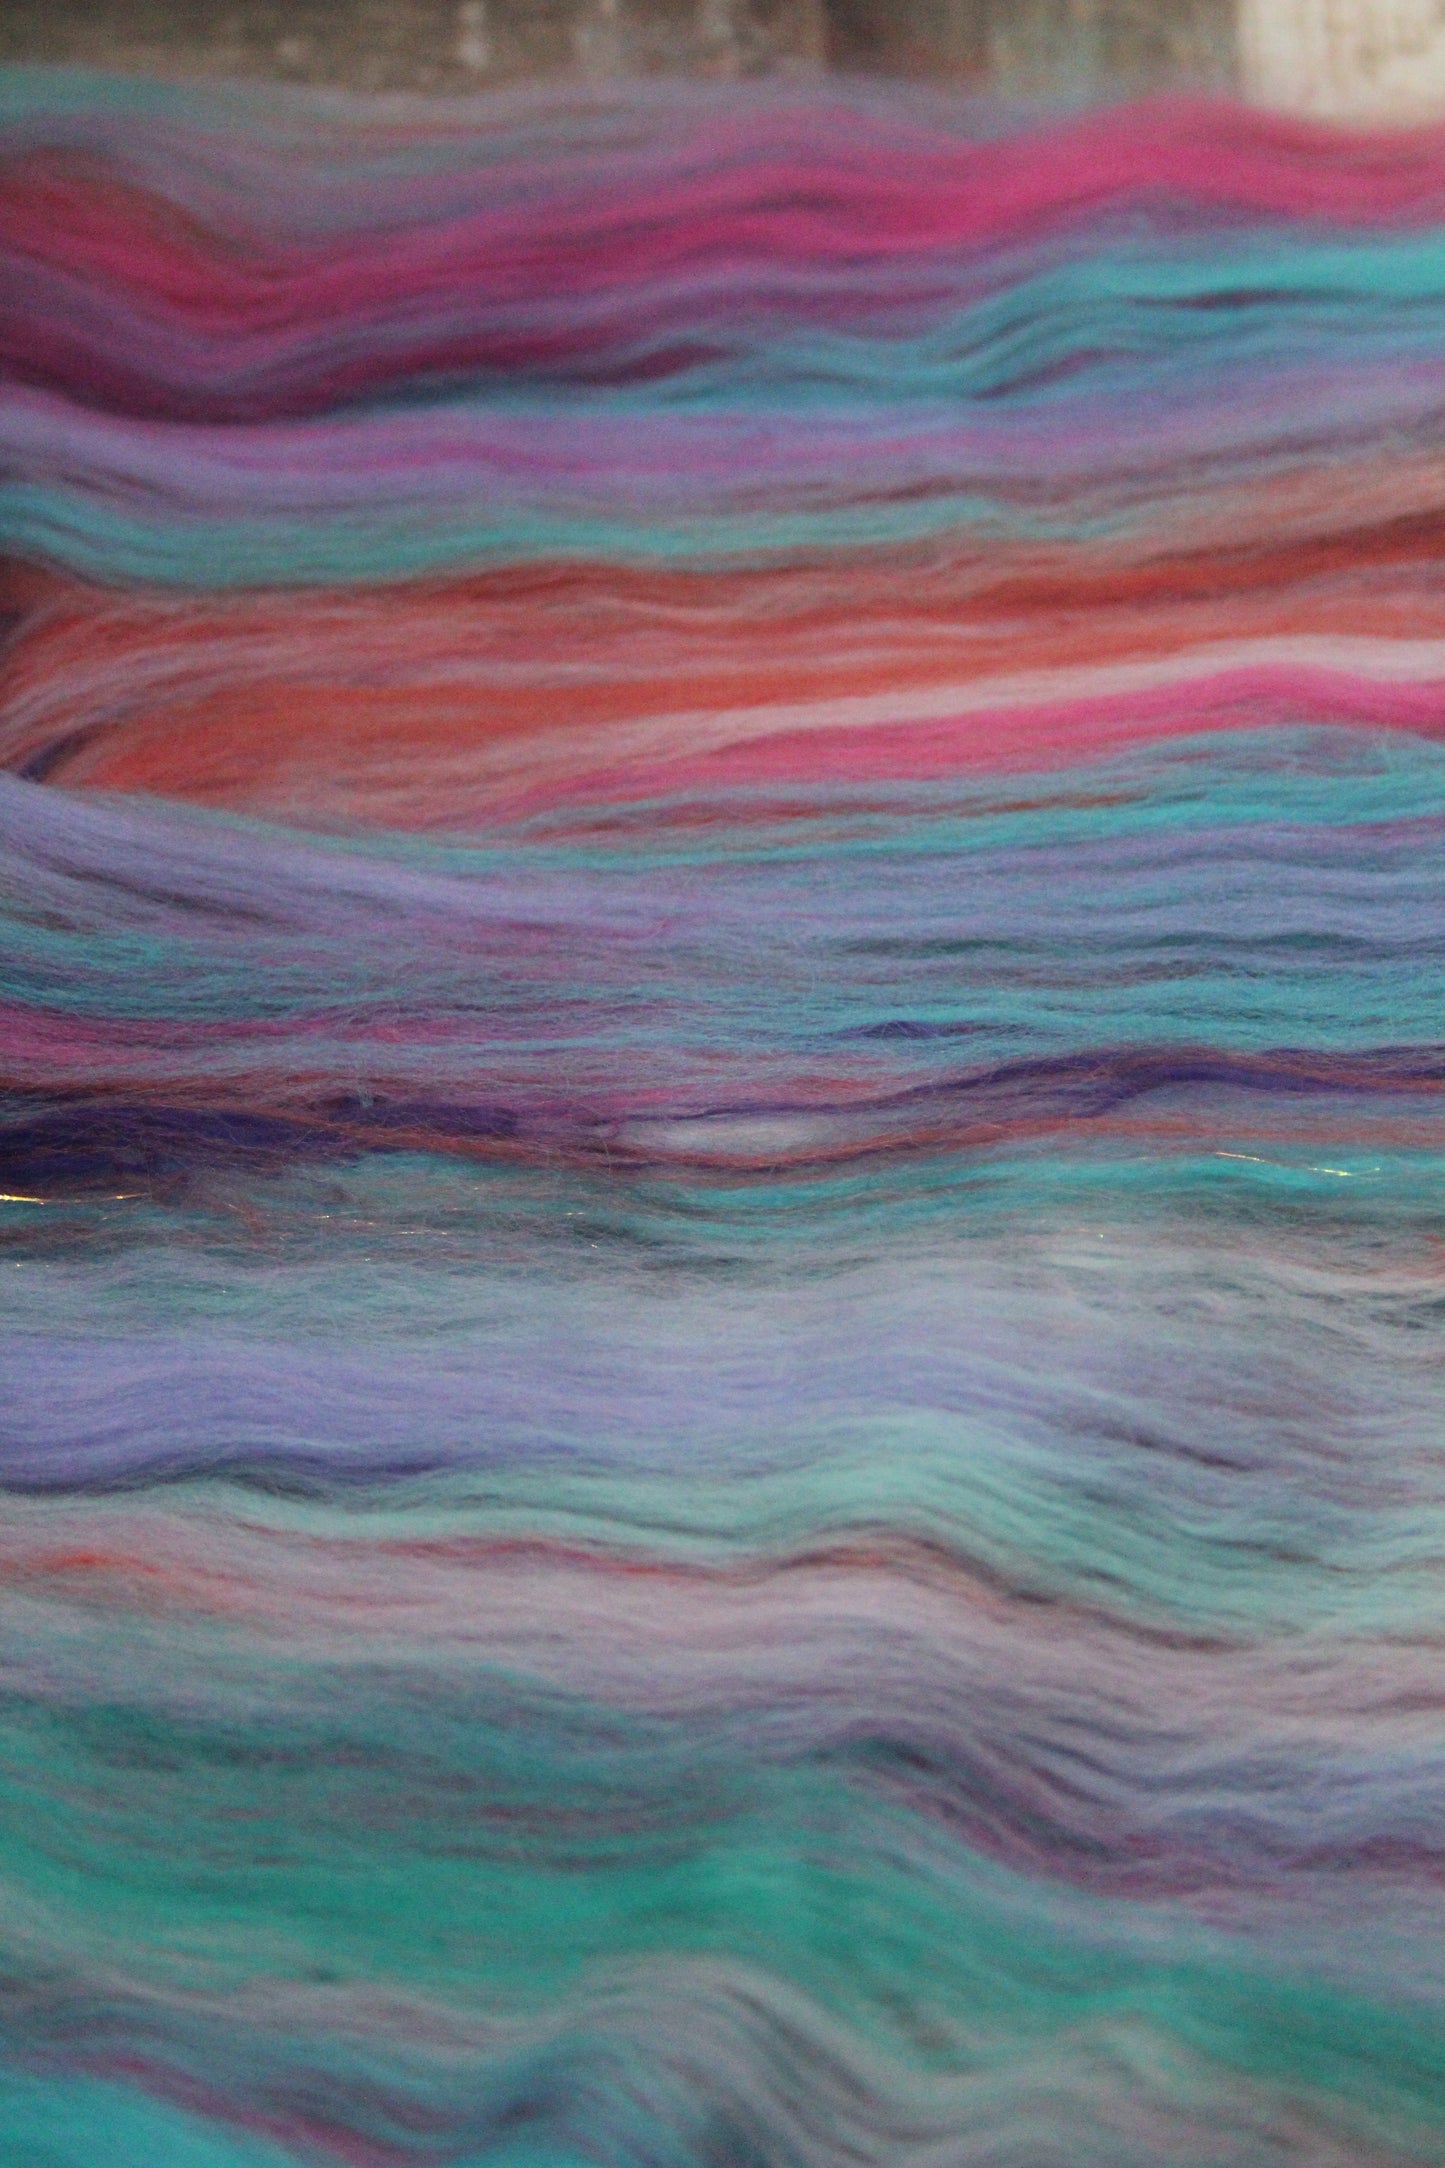 Merino Art Batt  - Pink Orange Purple Turquoise - 123 grams 4.3 oz - Wool for felting, spinning and weaving